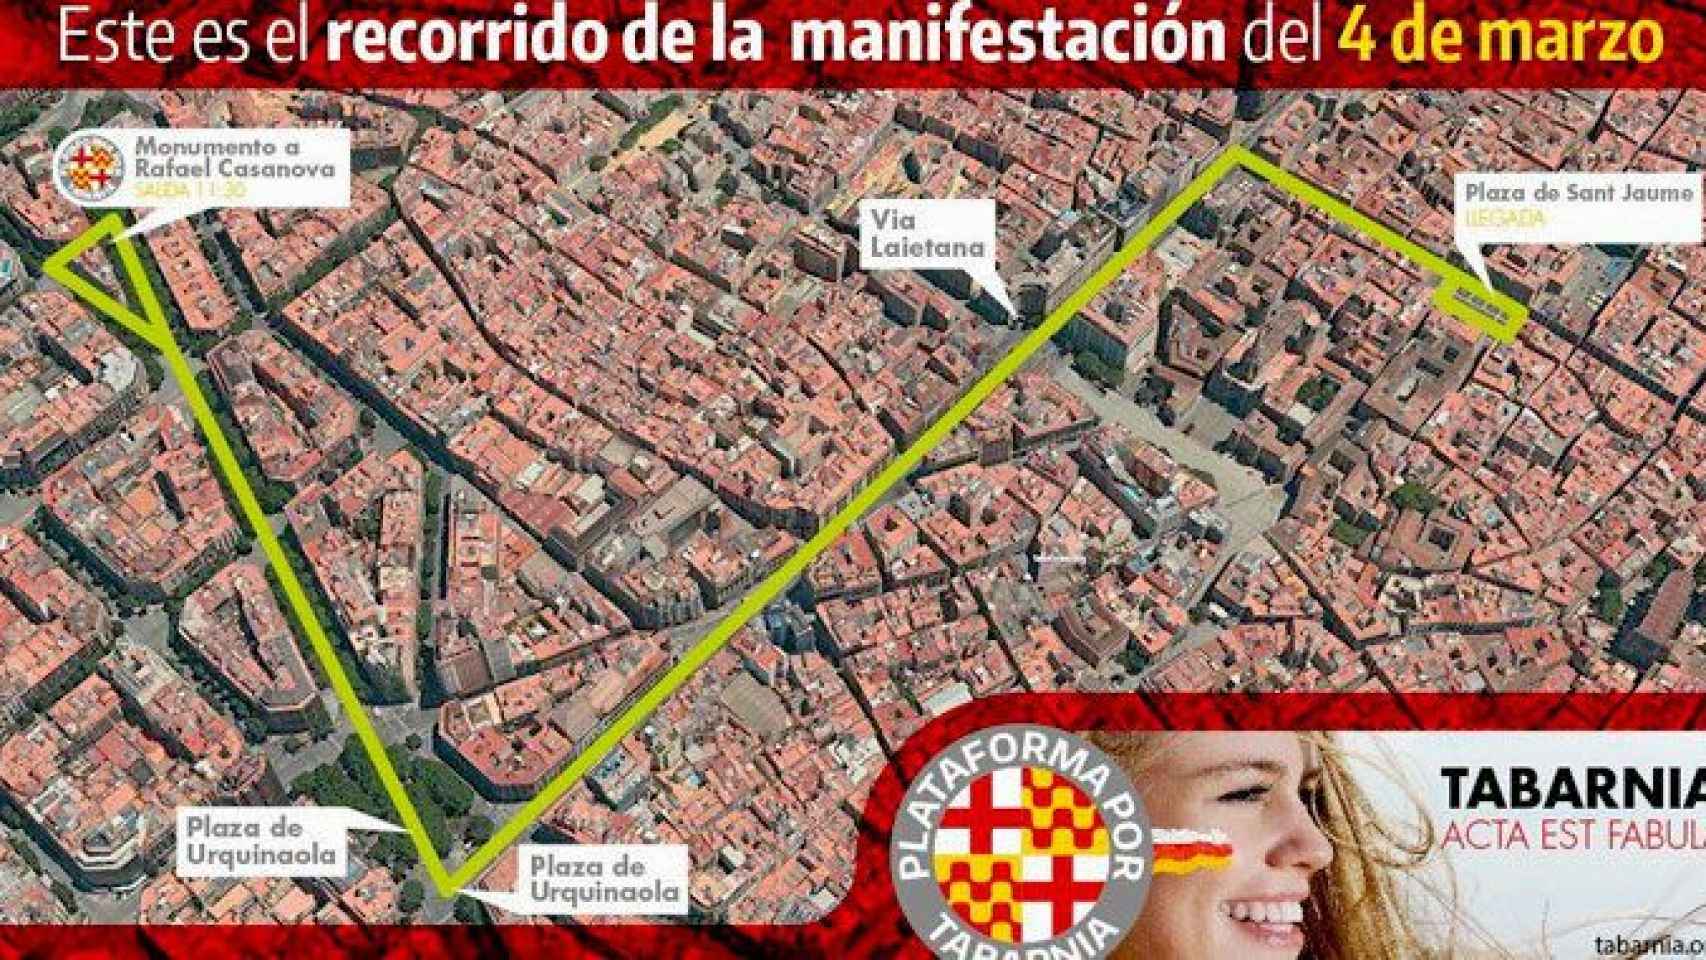 El recorrido de la manifestación de Tabarnia que recorrerá este domingo el centro de Barcelona / CG